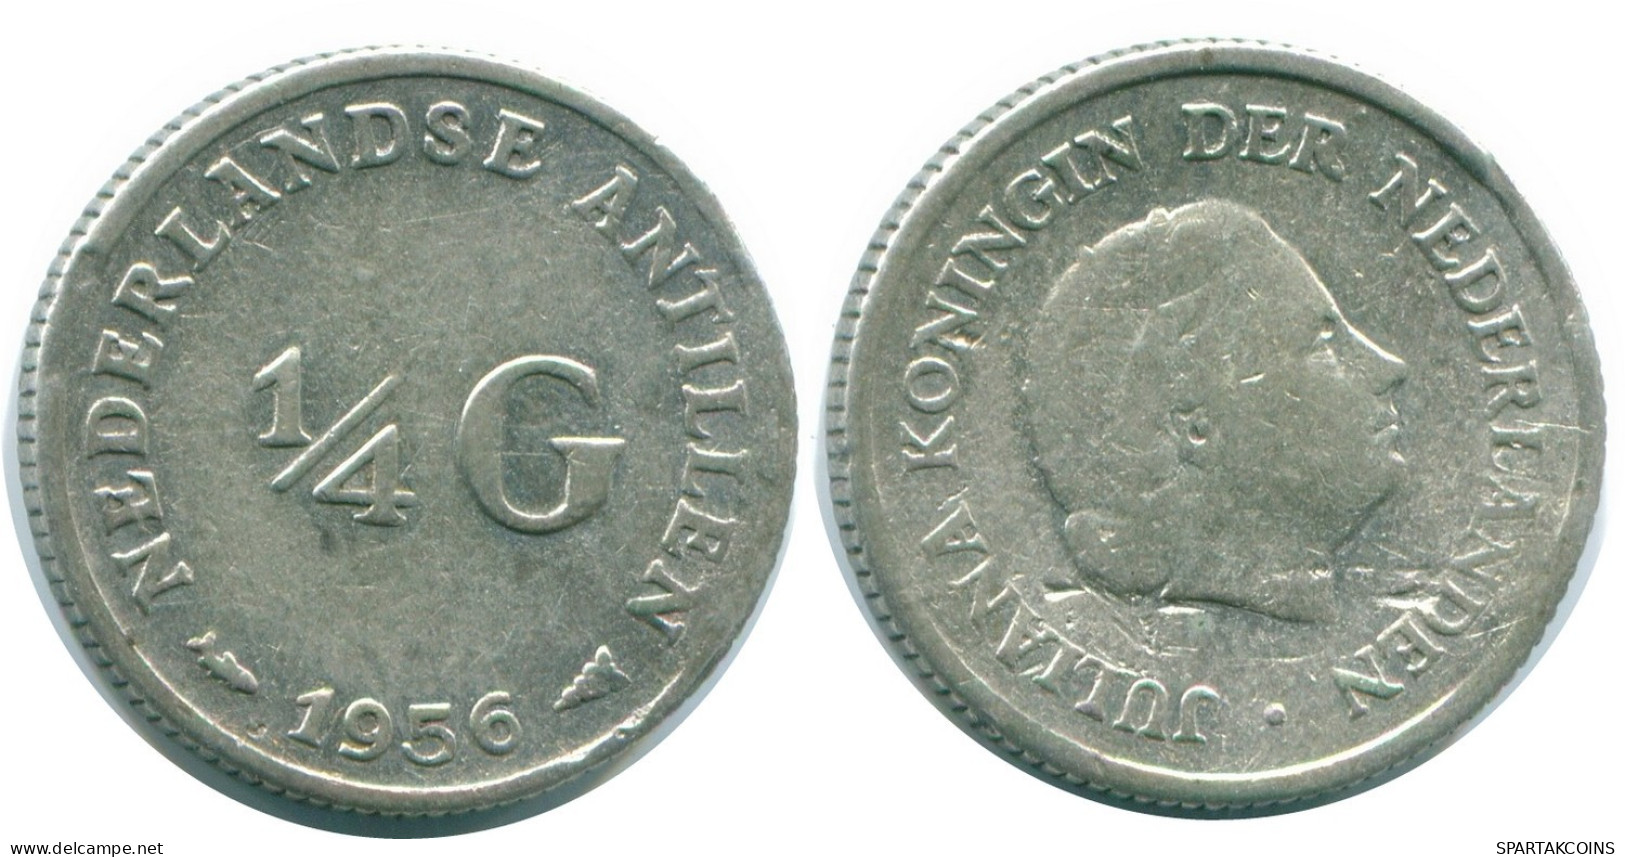 1/4 GULDEN 1956 NIEDERLÄNDISCHE ANTILLEN SILBER Koloniale Münze #NL10906.4.D.A - Niederländische Antillen